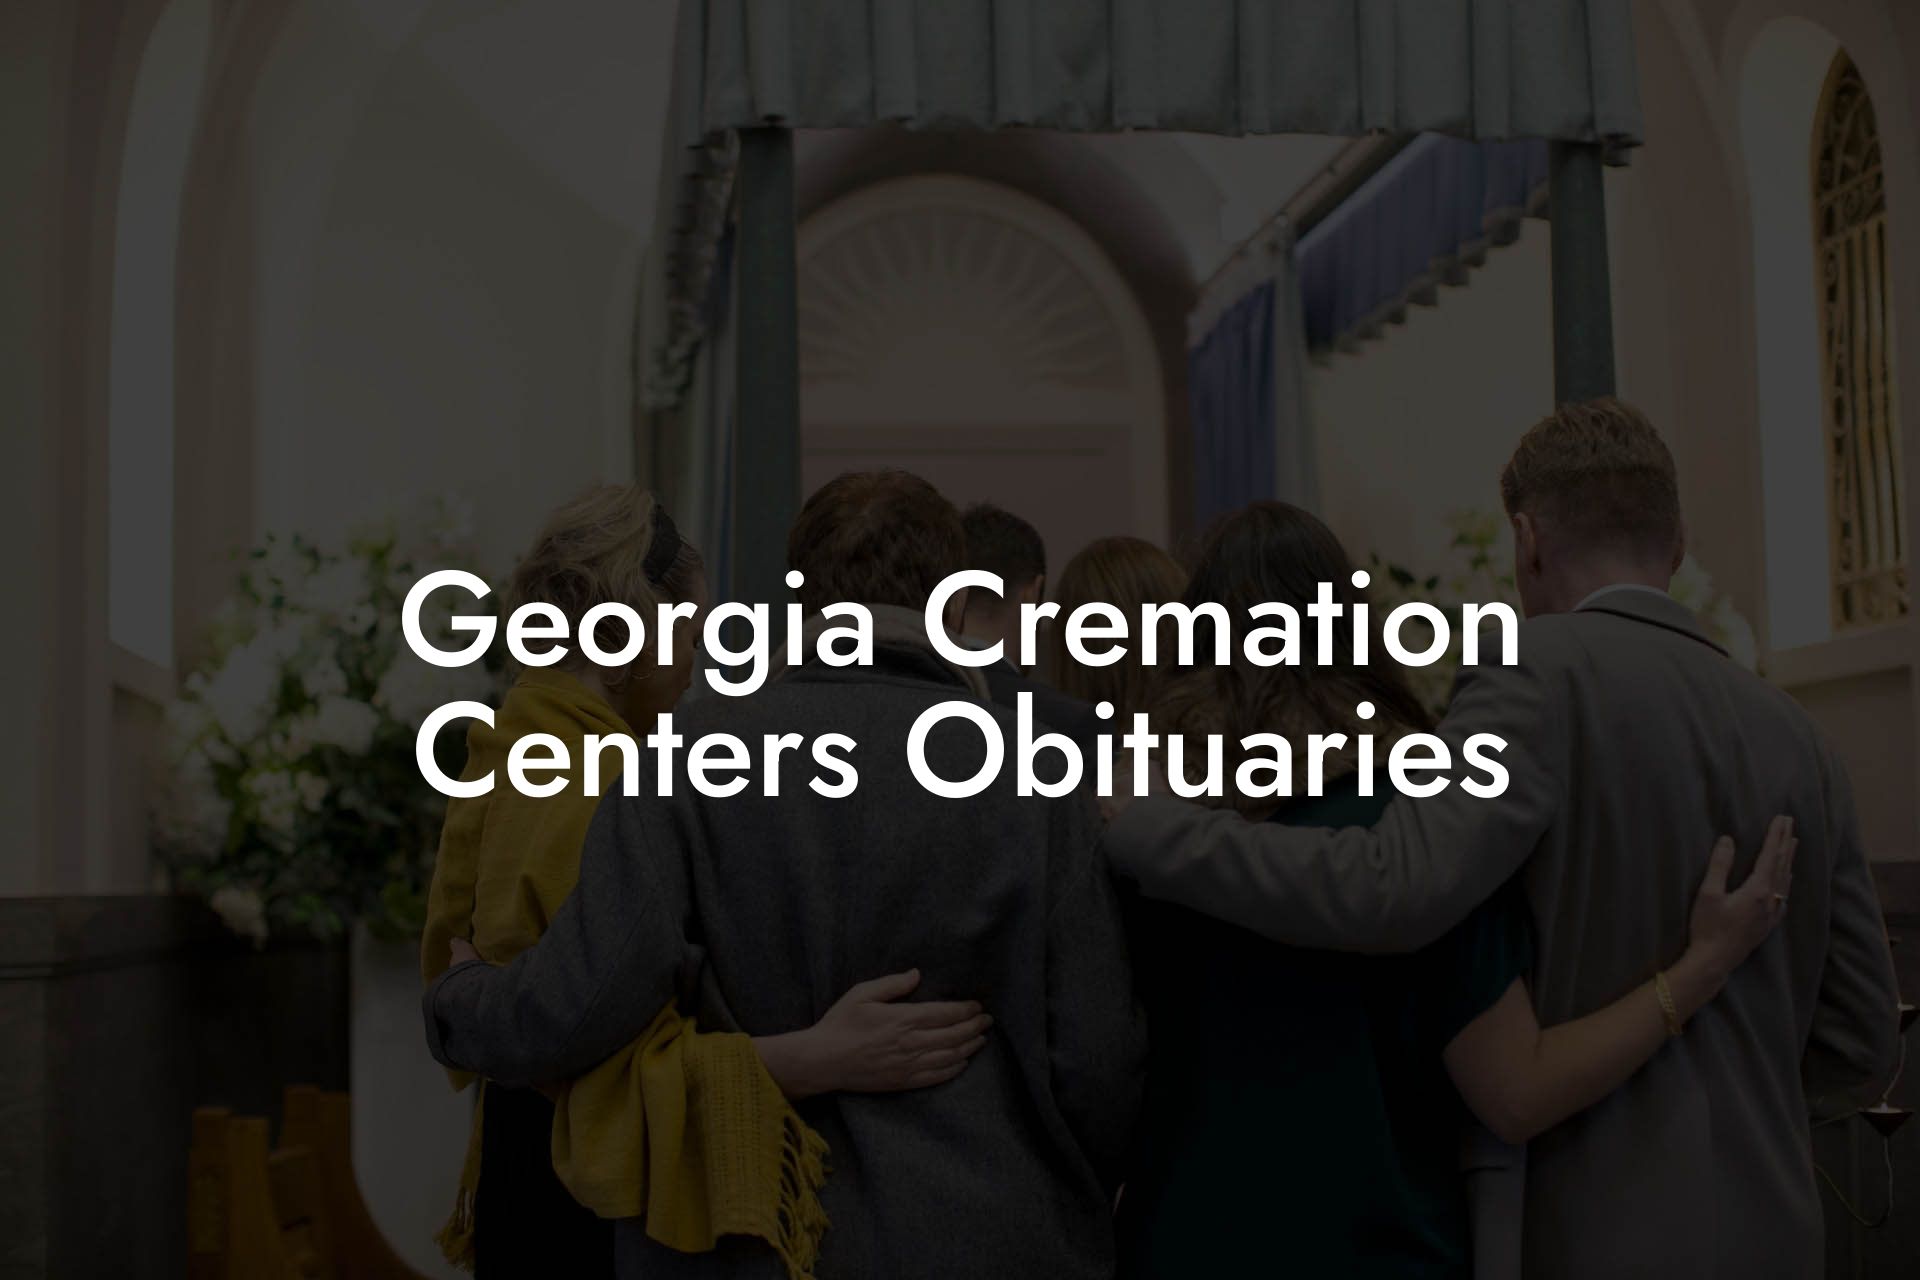 Georgia Cremation Centers Obituaries